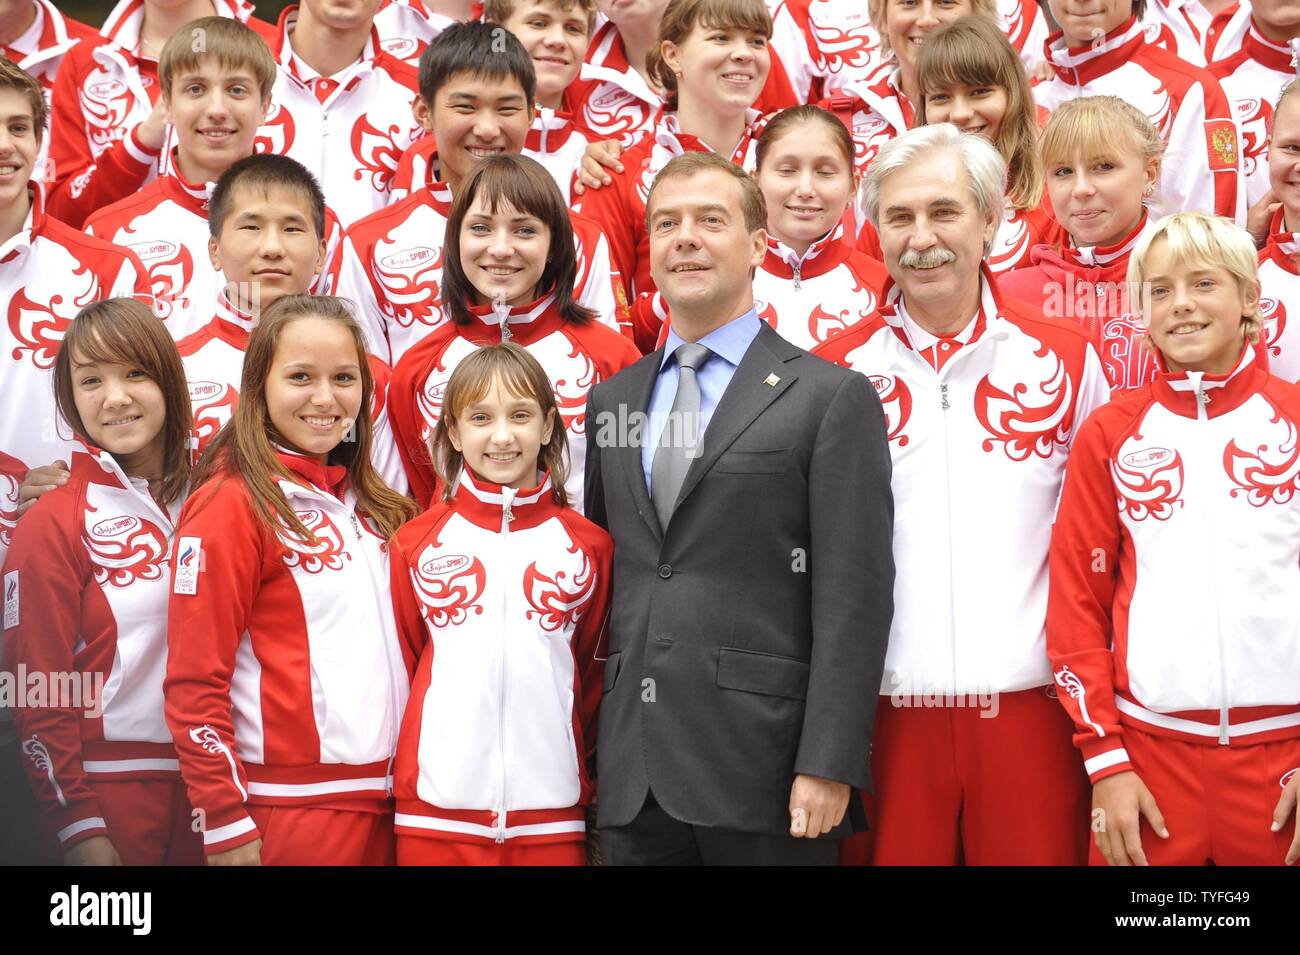 Der russische Präsident Dmitri Medwedew trifft sich mit nationalen Teilnehmer von Singapur 2010 Youth Olympic Games in seiner Residenz Gorki außerhalb von Moskau am 30. August 2010. UPI Foto/Alex Volgin.. Stockfoto